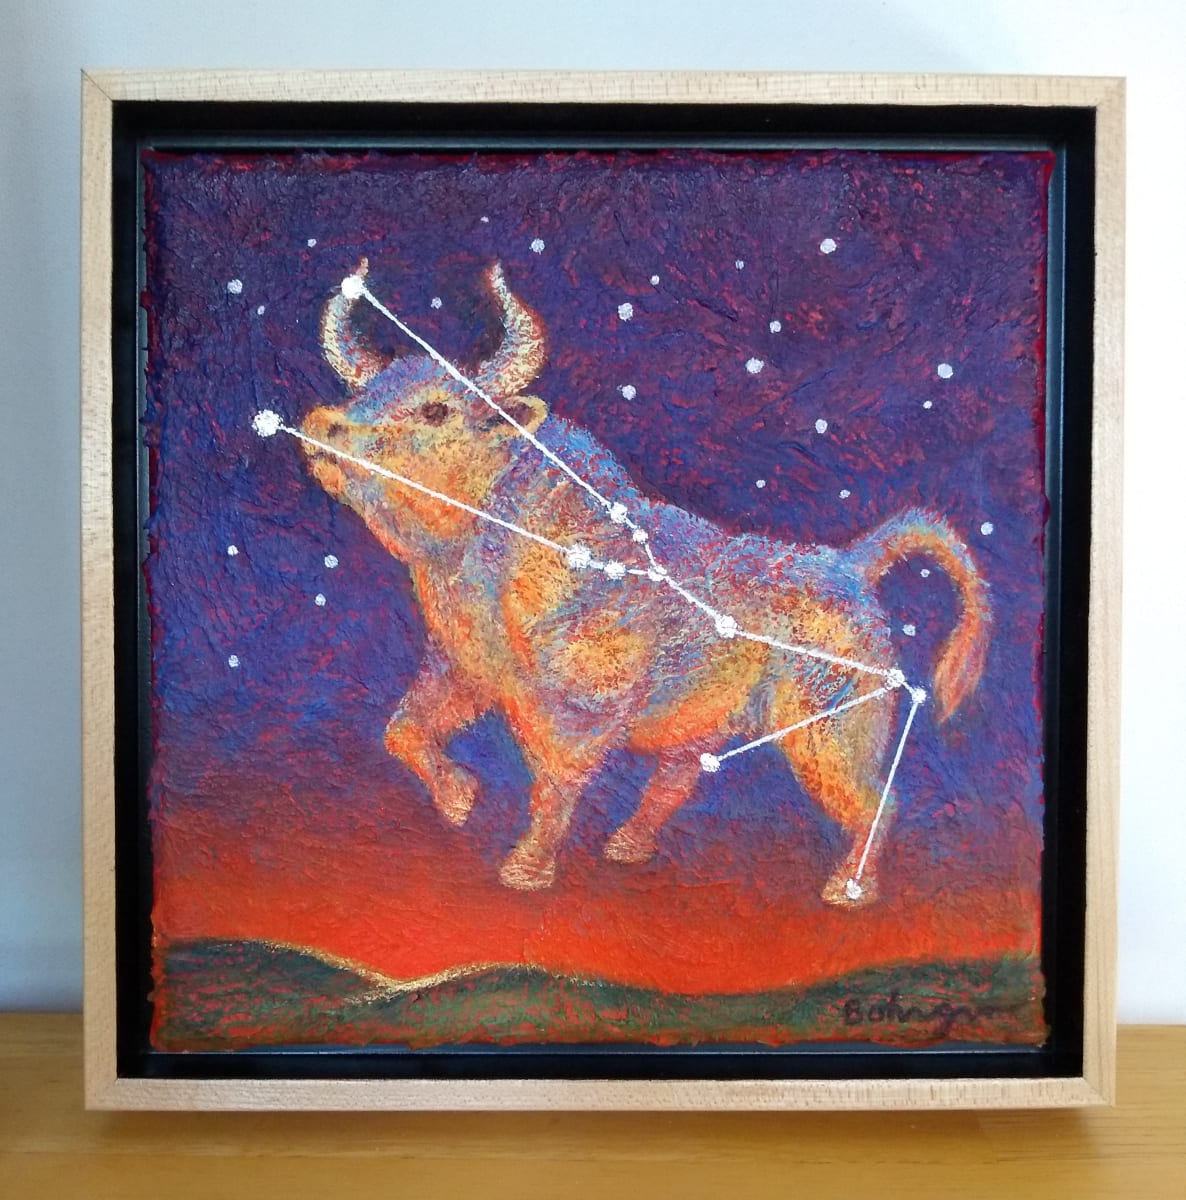 Constellation Taurus by Lisa Bohnwagner 